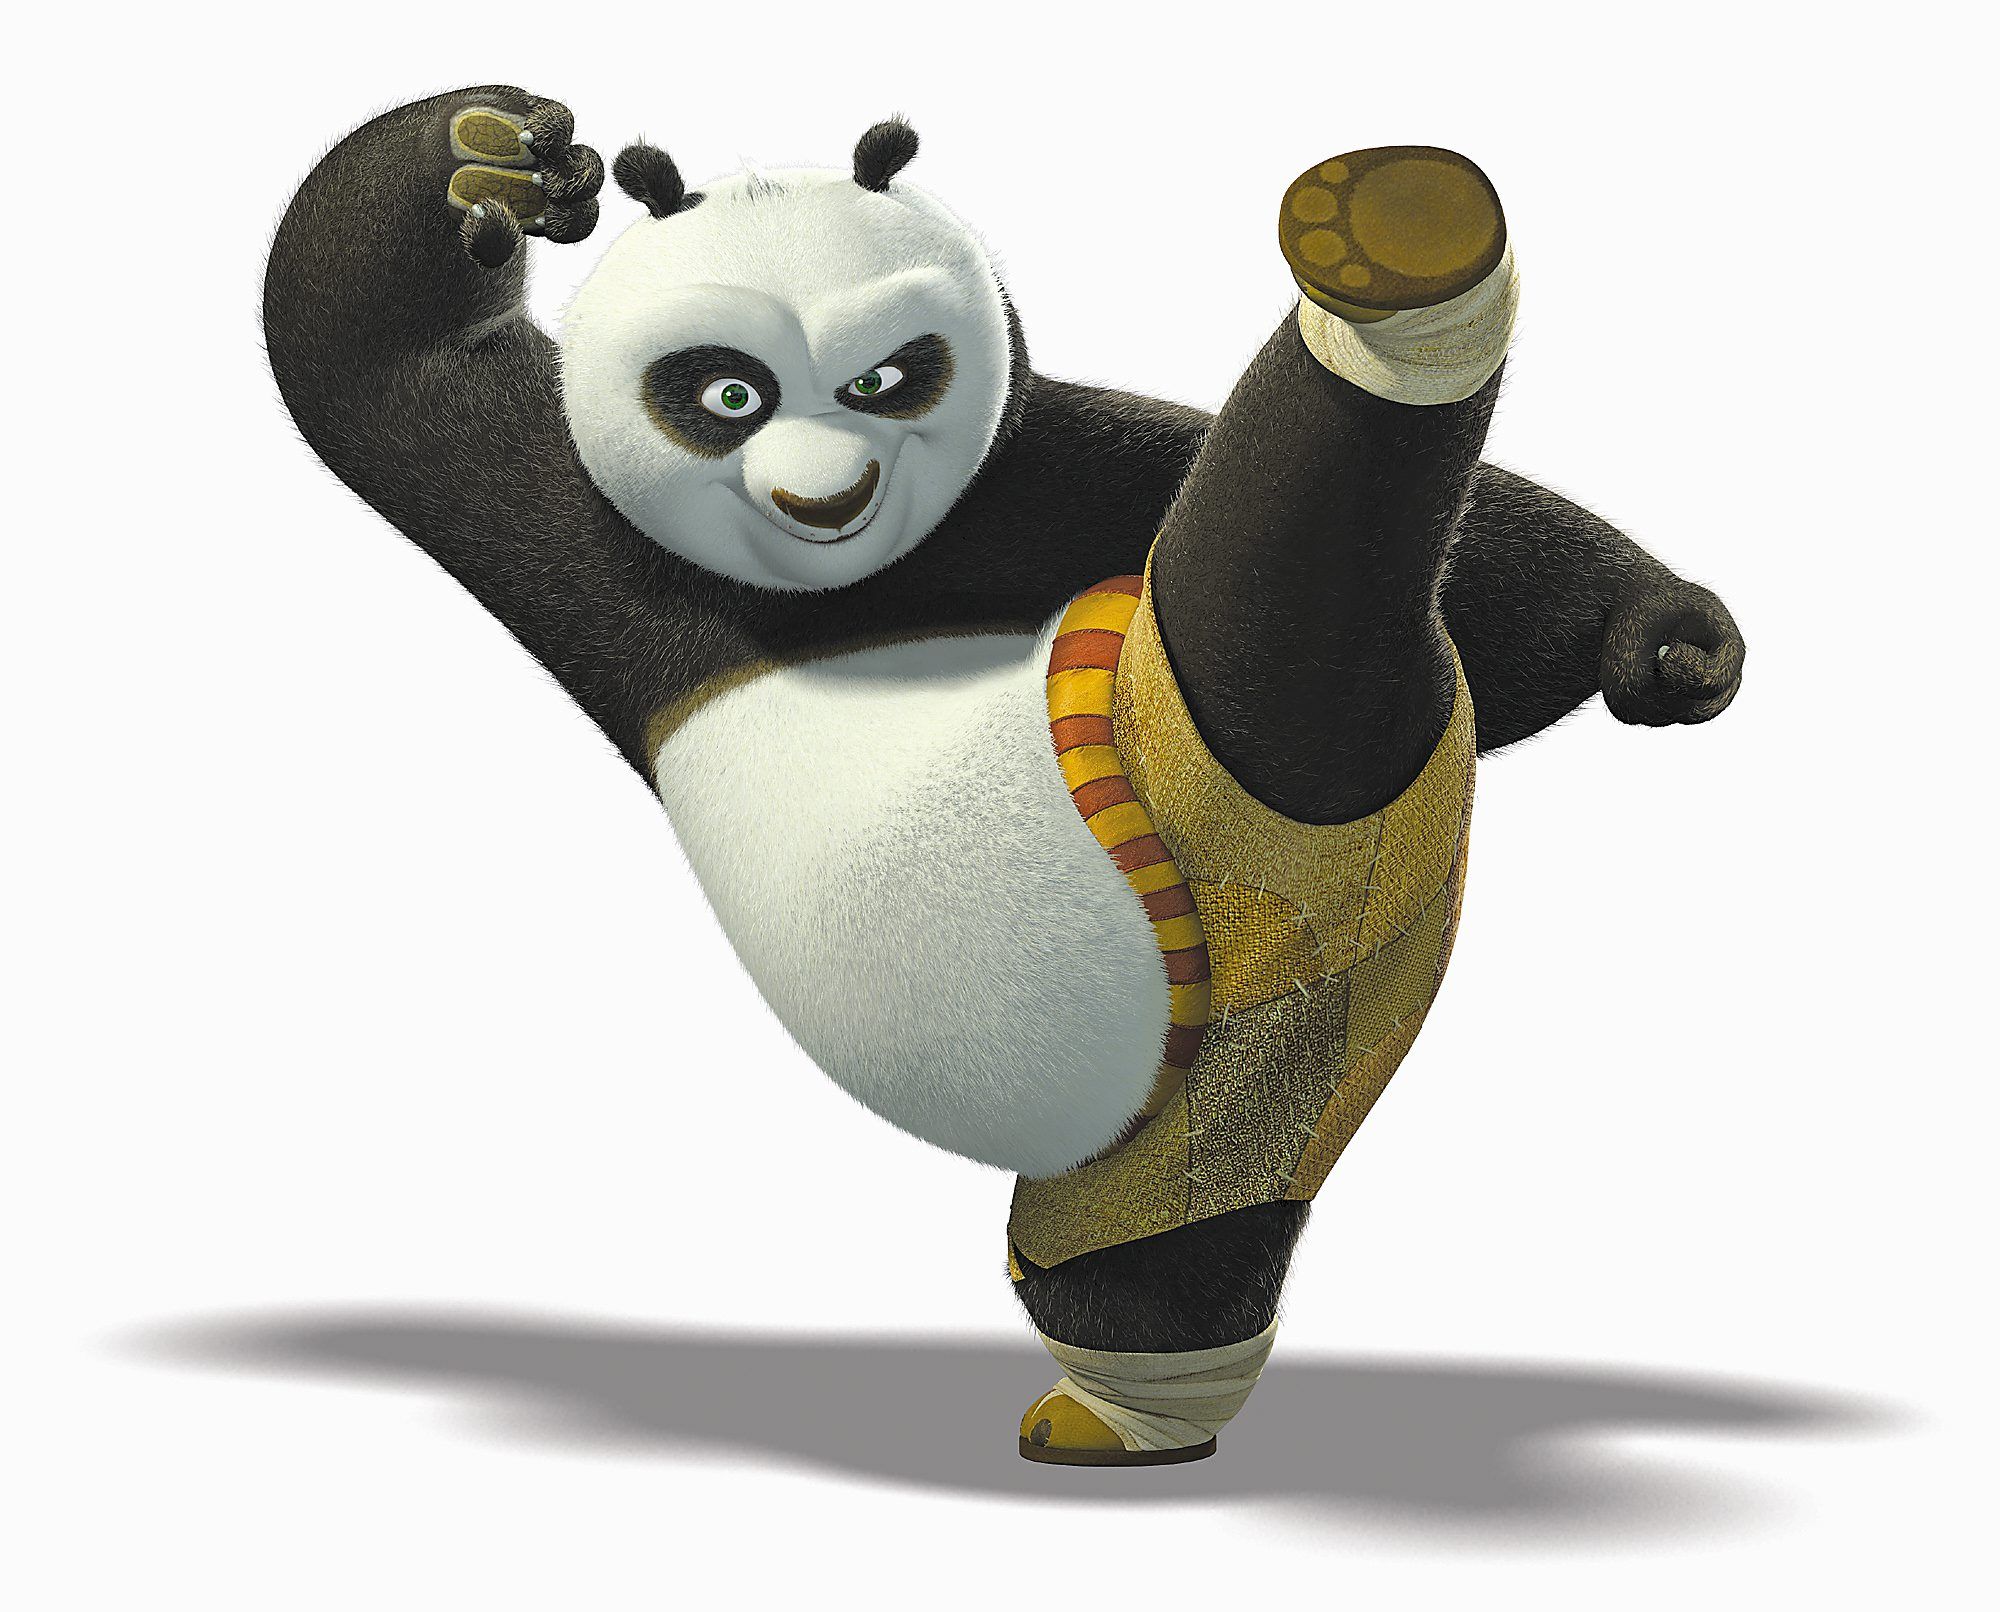 Kung Fu Panda - desktop wallpaper